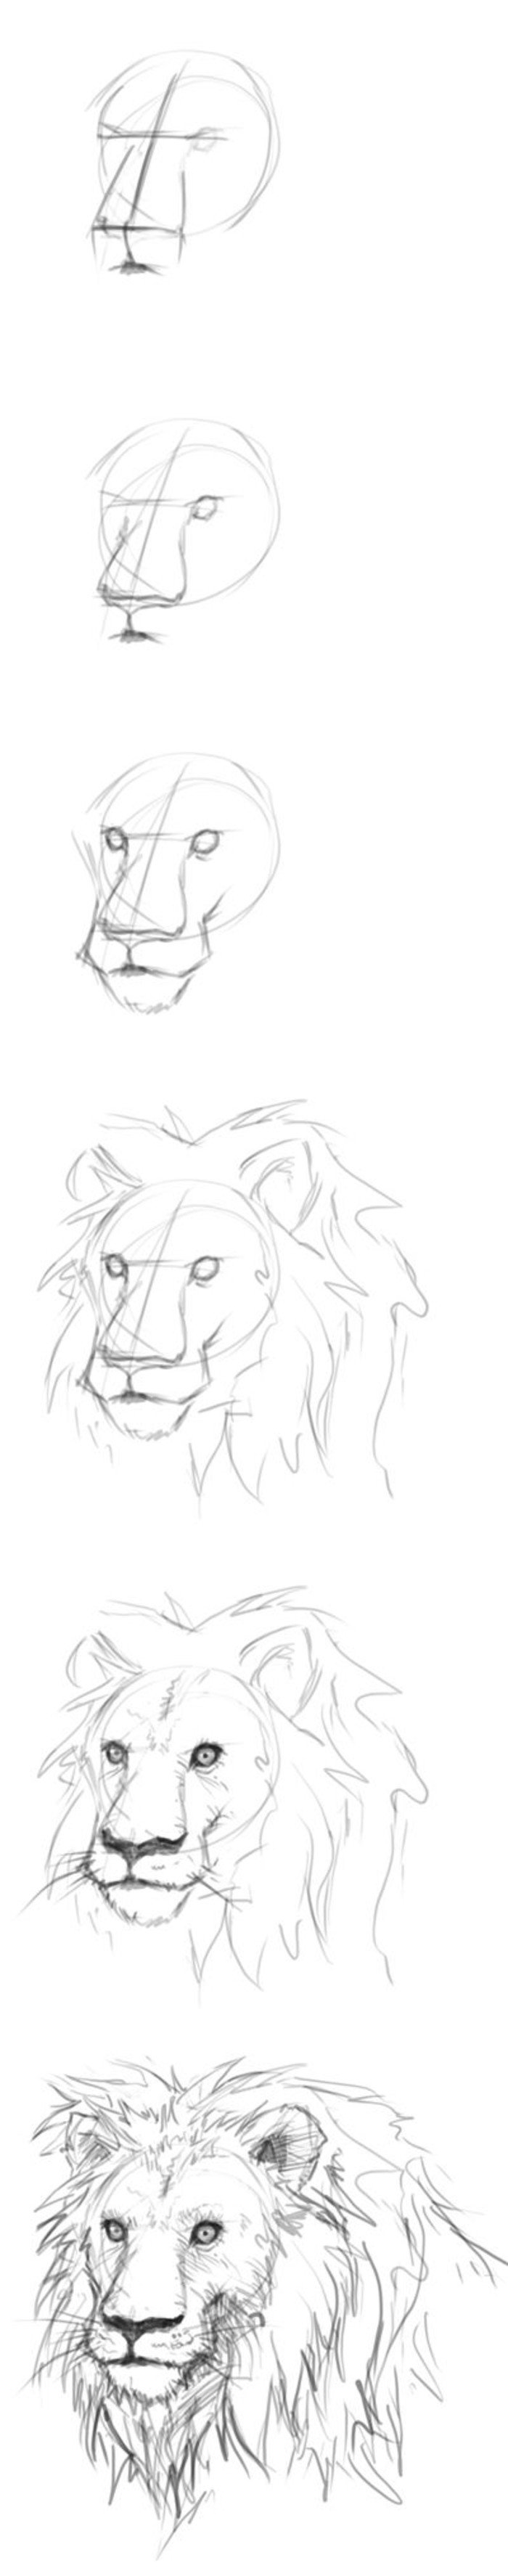 Нарисовать голову Льва поэтапно